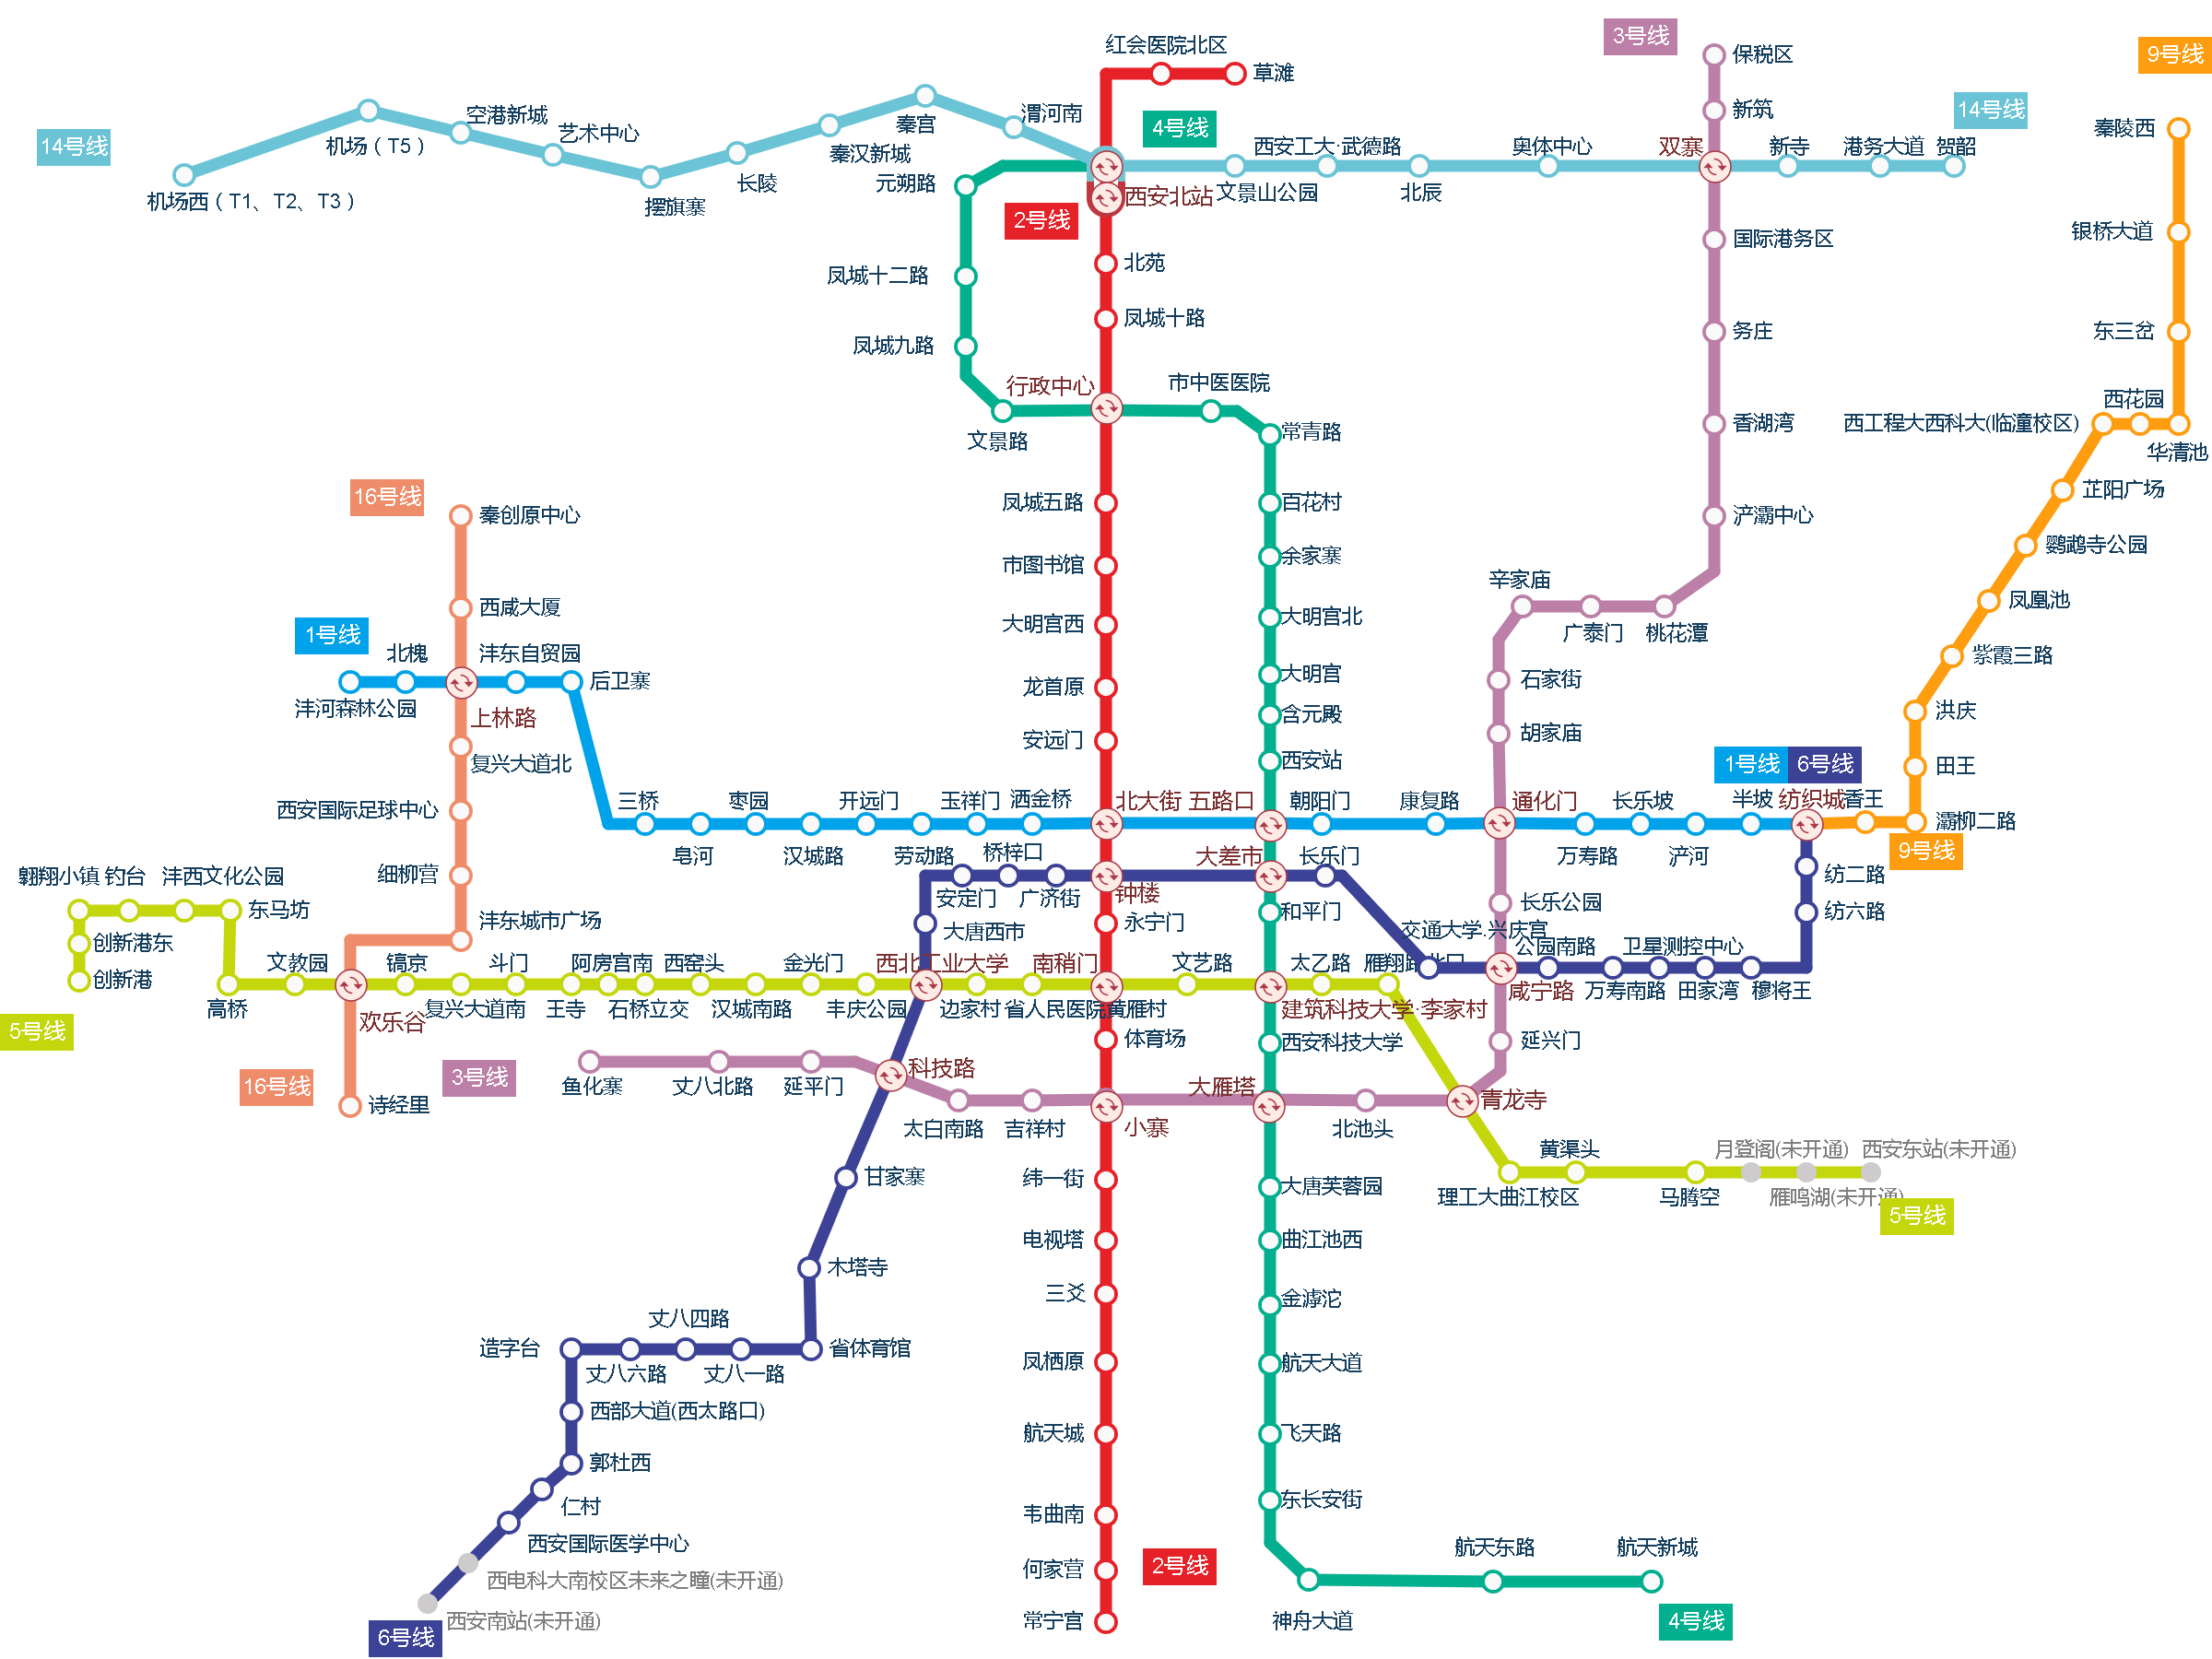 2021年西安地铁图图片